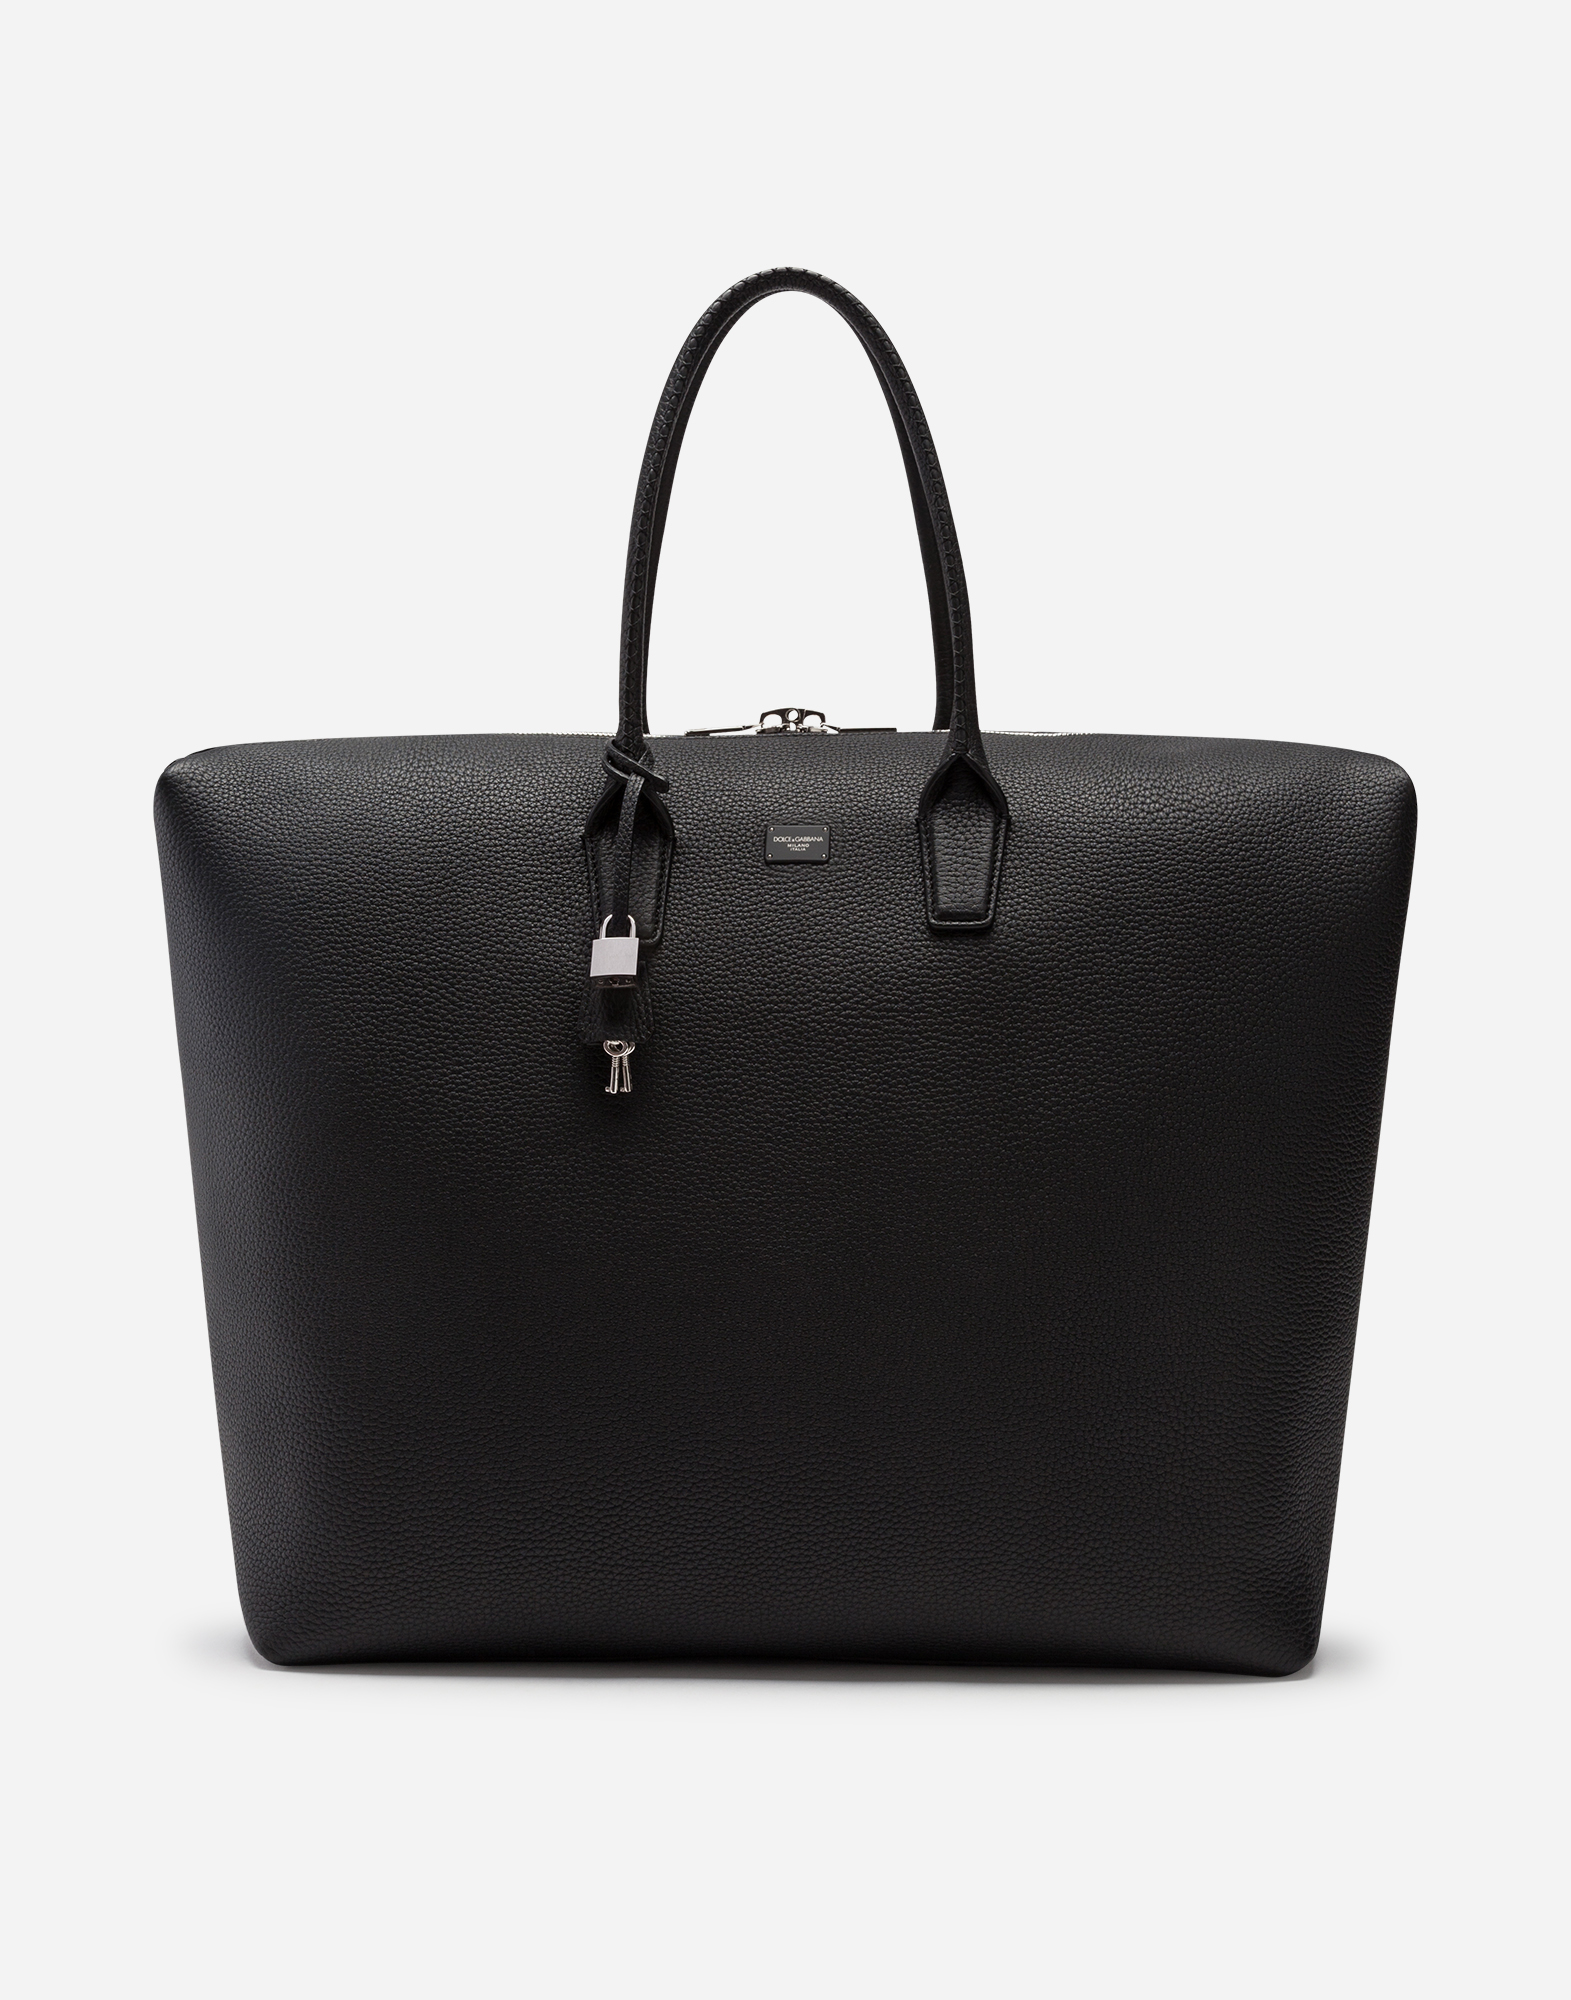 Dolce & Gabbana Calfskin Travel Bag In Black